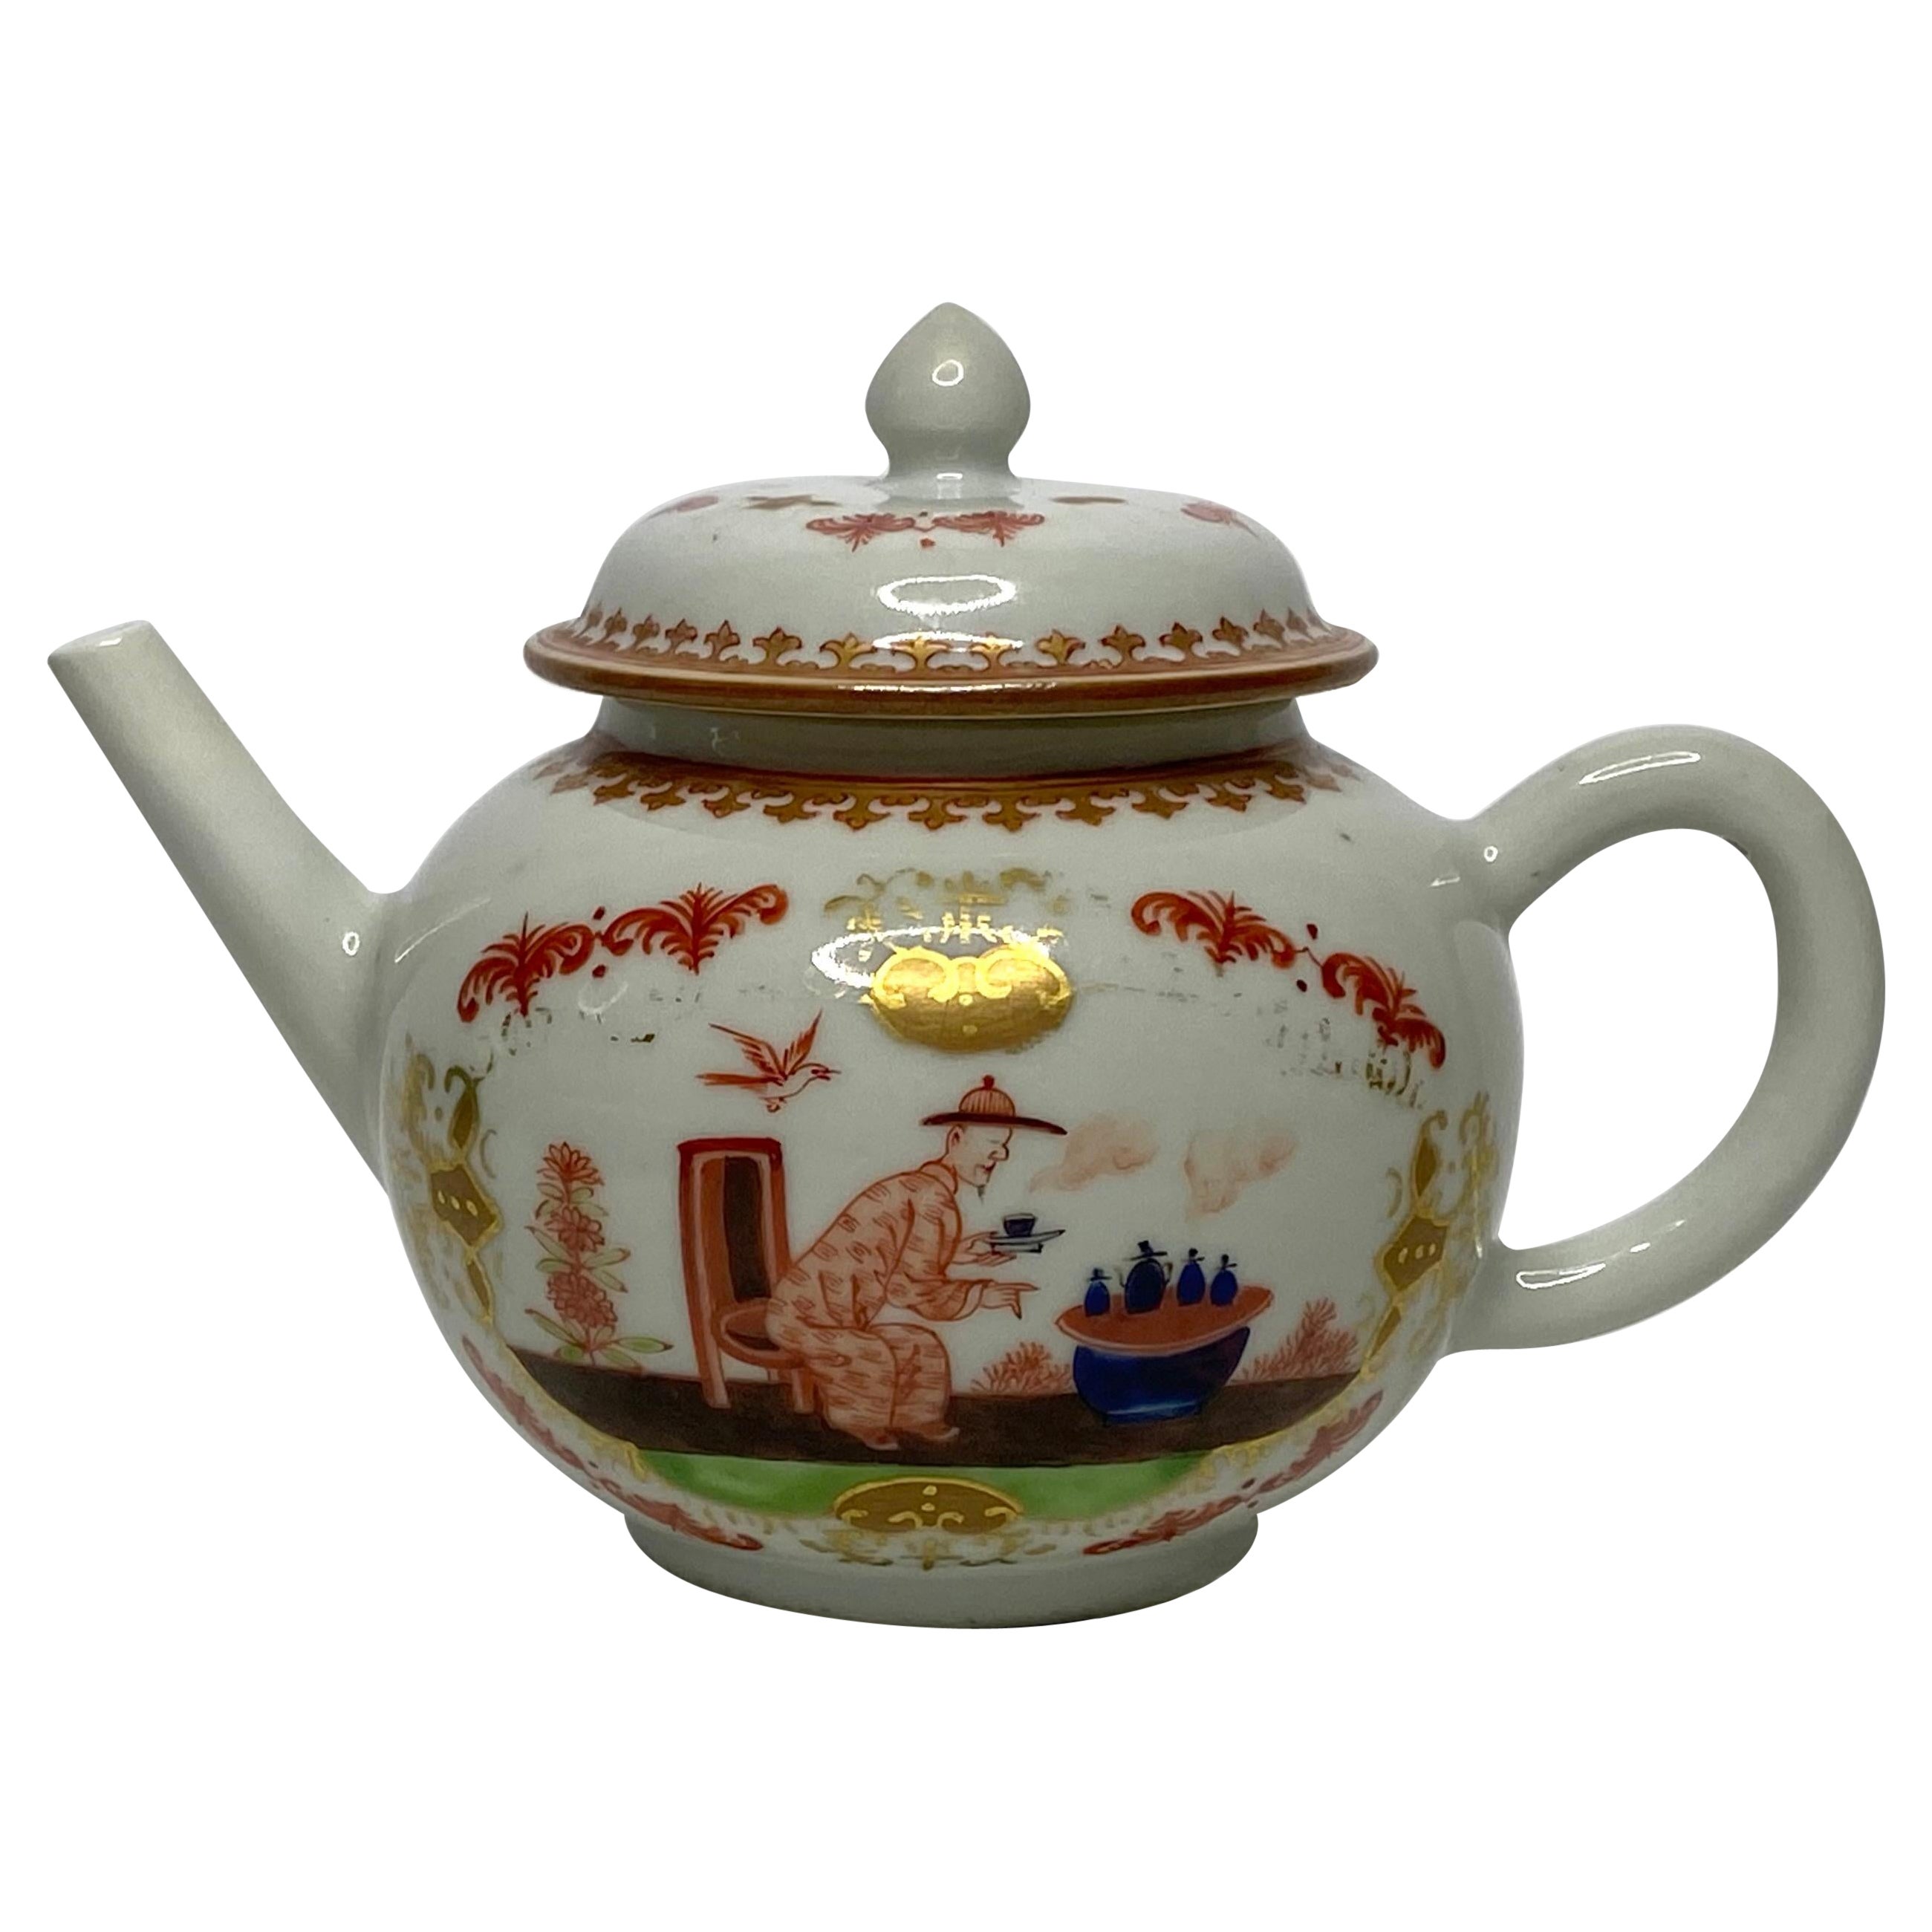 Chinese porcelain teapot, Meissen style, c. 1750, Qianlong Period.